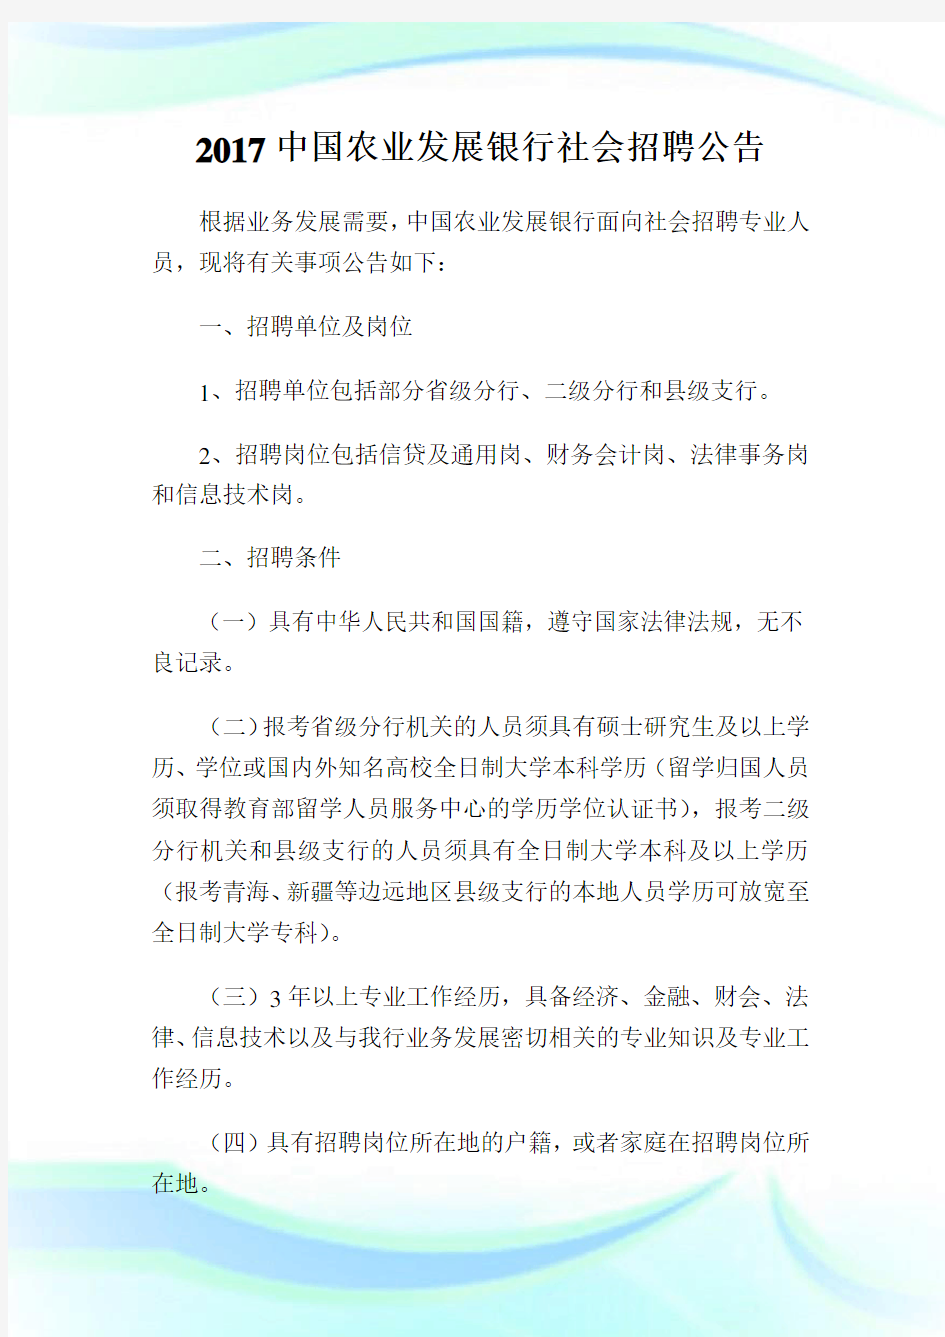 中国农业发展银行社会招聘公告.doc